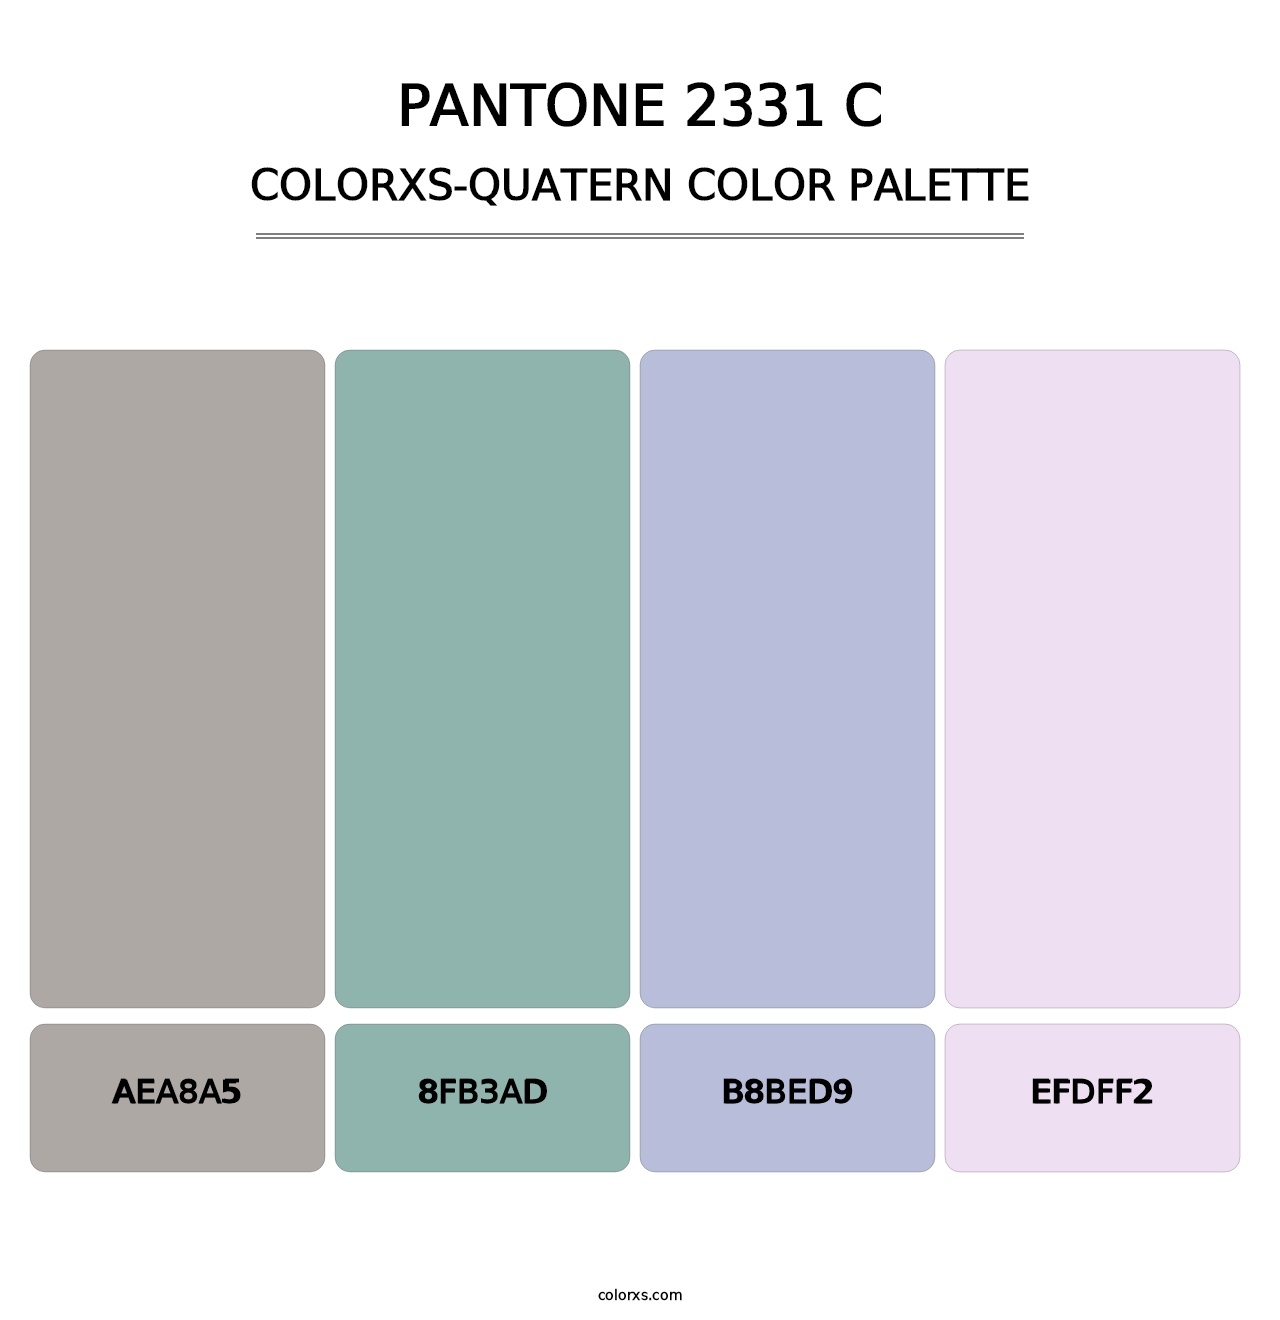 PANTONE 2331 C - Colorxs Quatern Palette